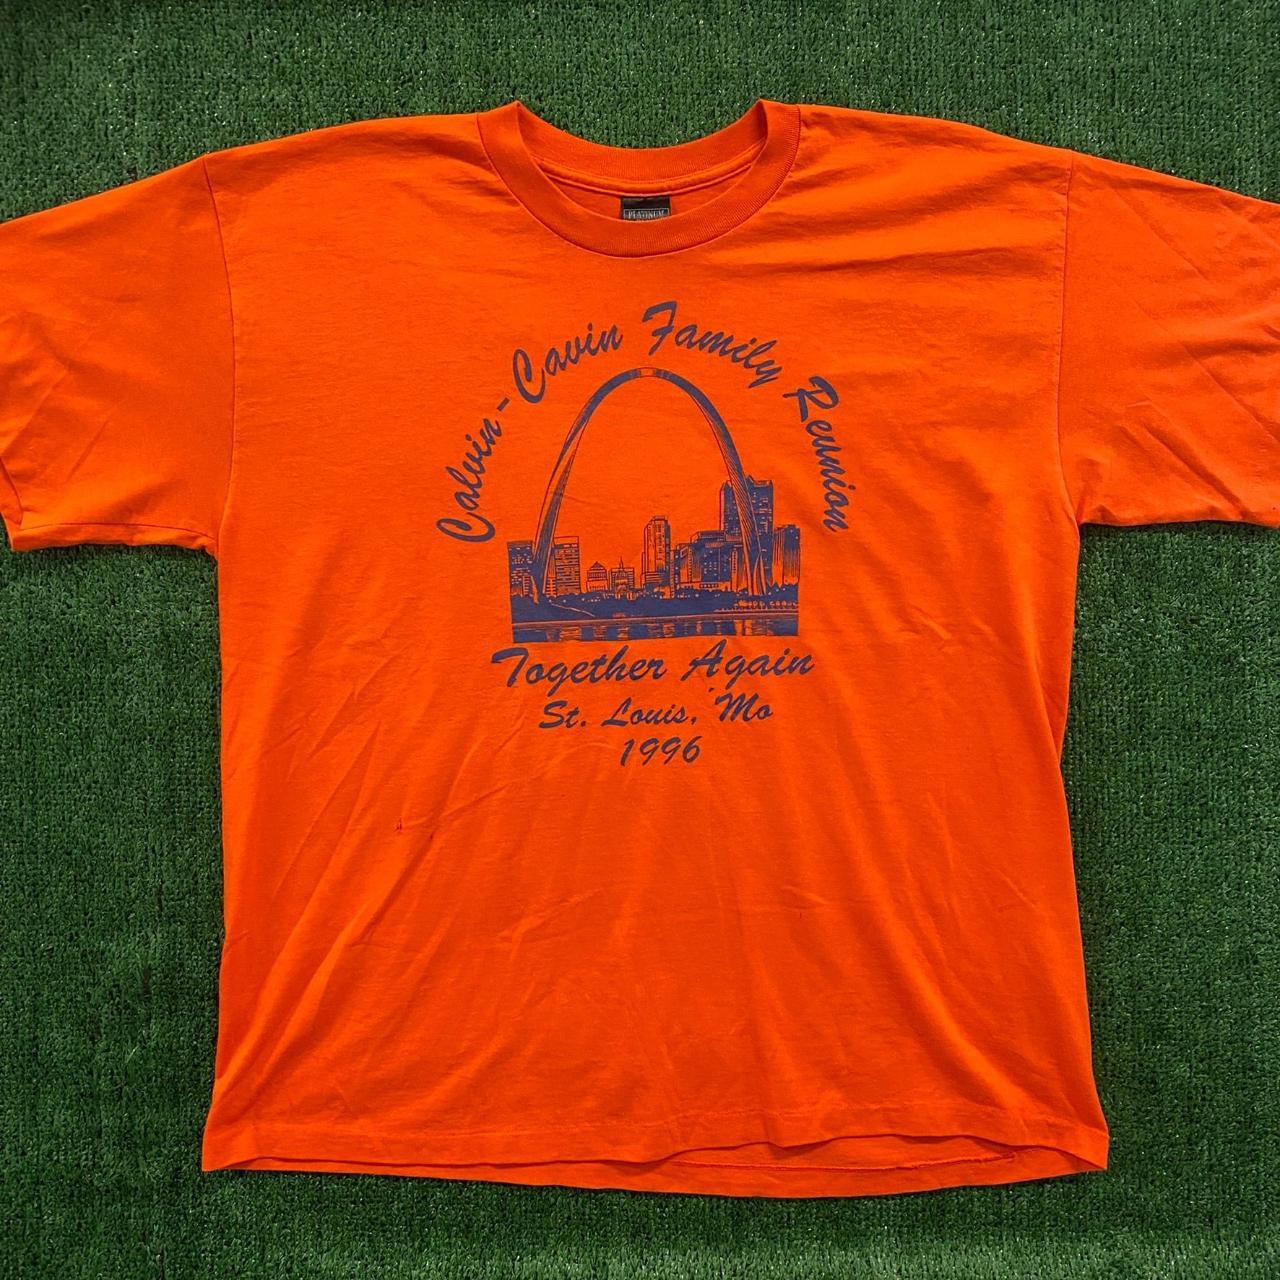 St. Louis Missouri Vintage Shirt